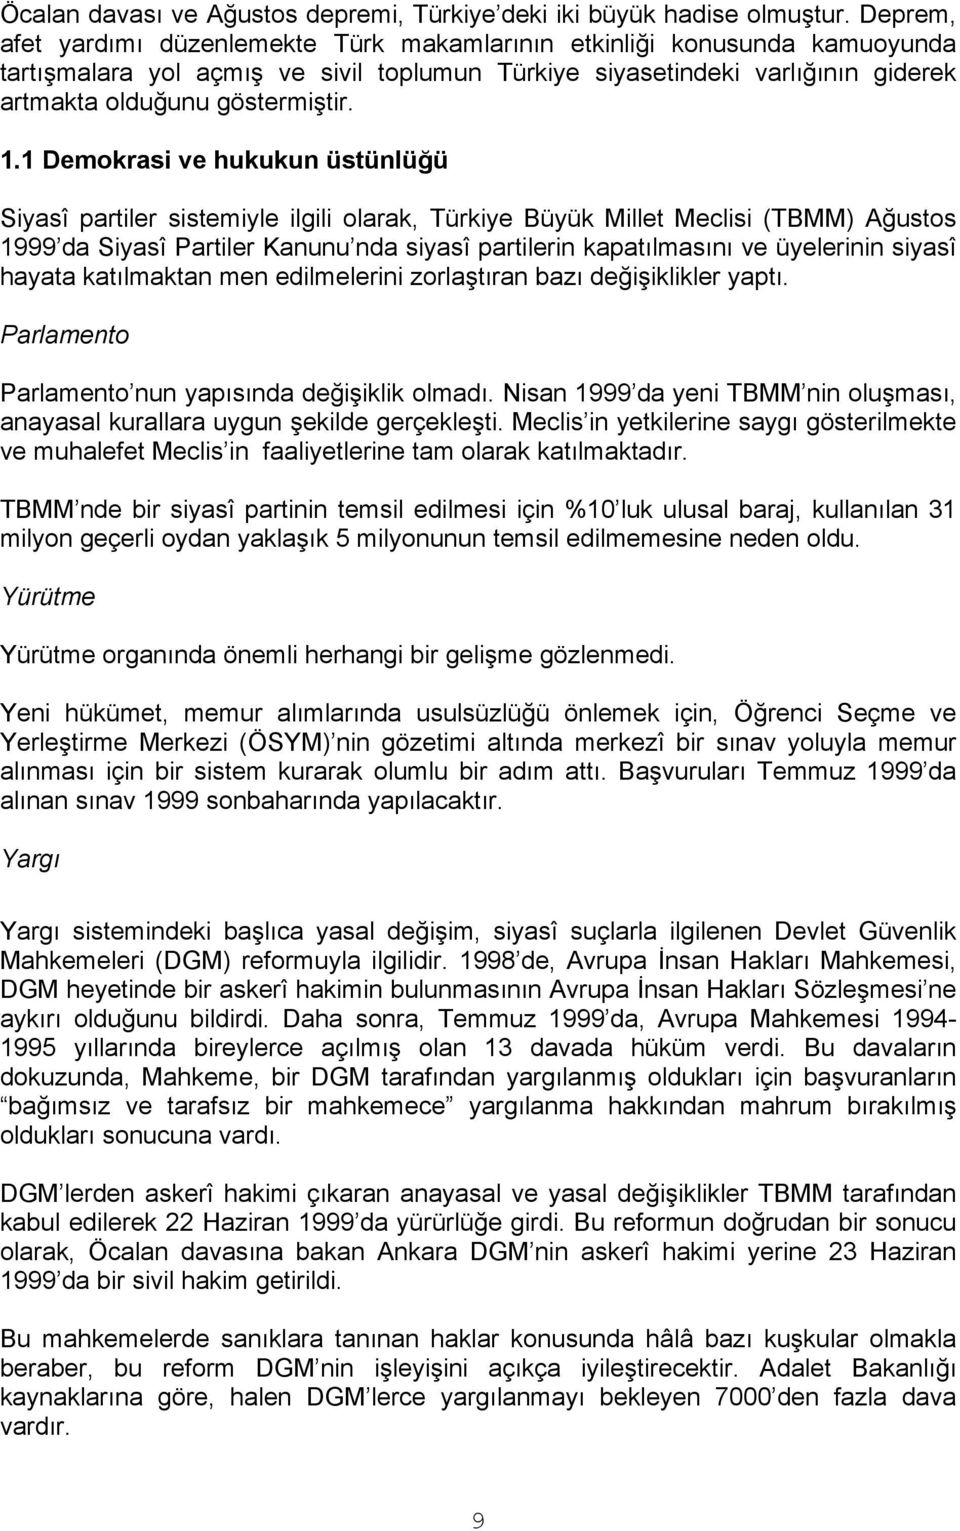 1 Demokrasi ve hukukun üstünlüğü Siyasî partiler sistemiyle ilgili olarak, Türkiye Büyük Millet Meclisi (TBMM) Ağustos 1999 da Siyasî Partiler Kanunu nda siyasî partilerin kapatılmasını ve üyelerinin